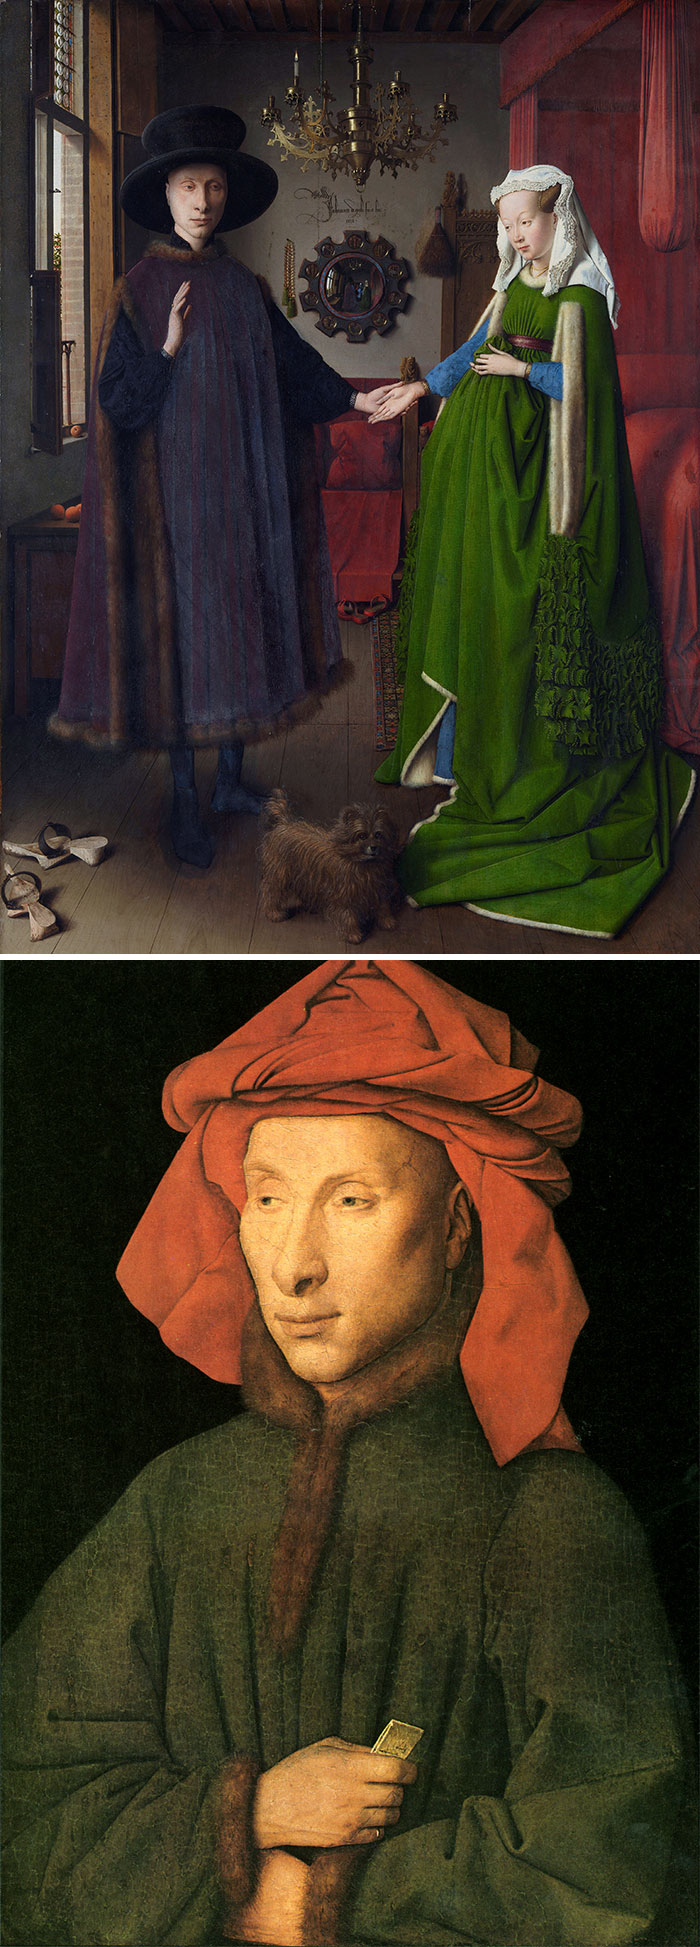 Van Eyck Jak rozpoznać słynnych malarzy? Skuteczny przewodnik po sztuce z lekkim przymrużeniem oka